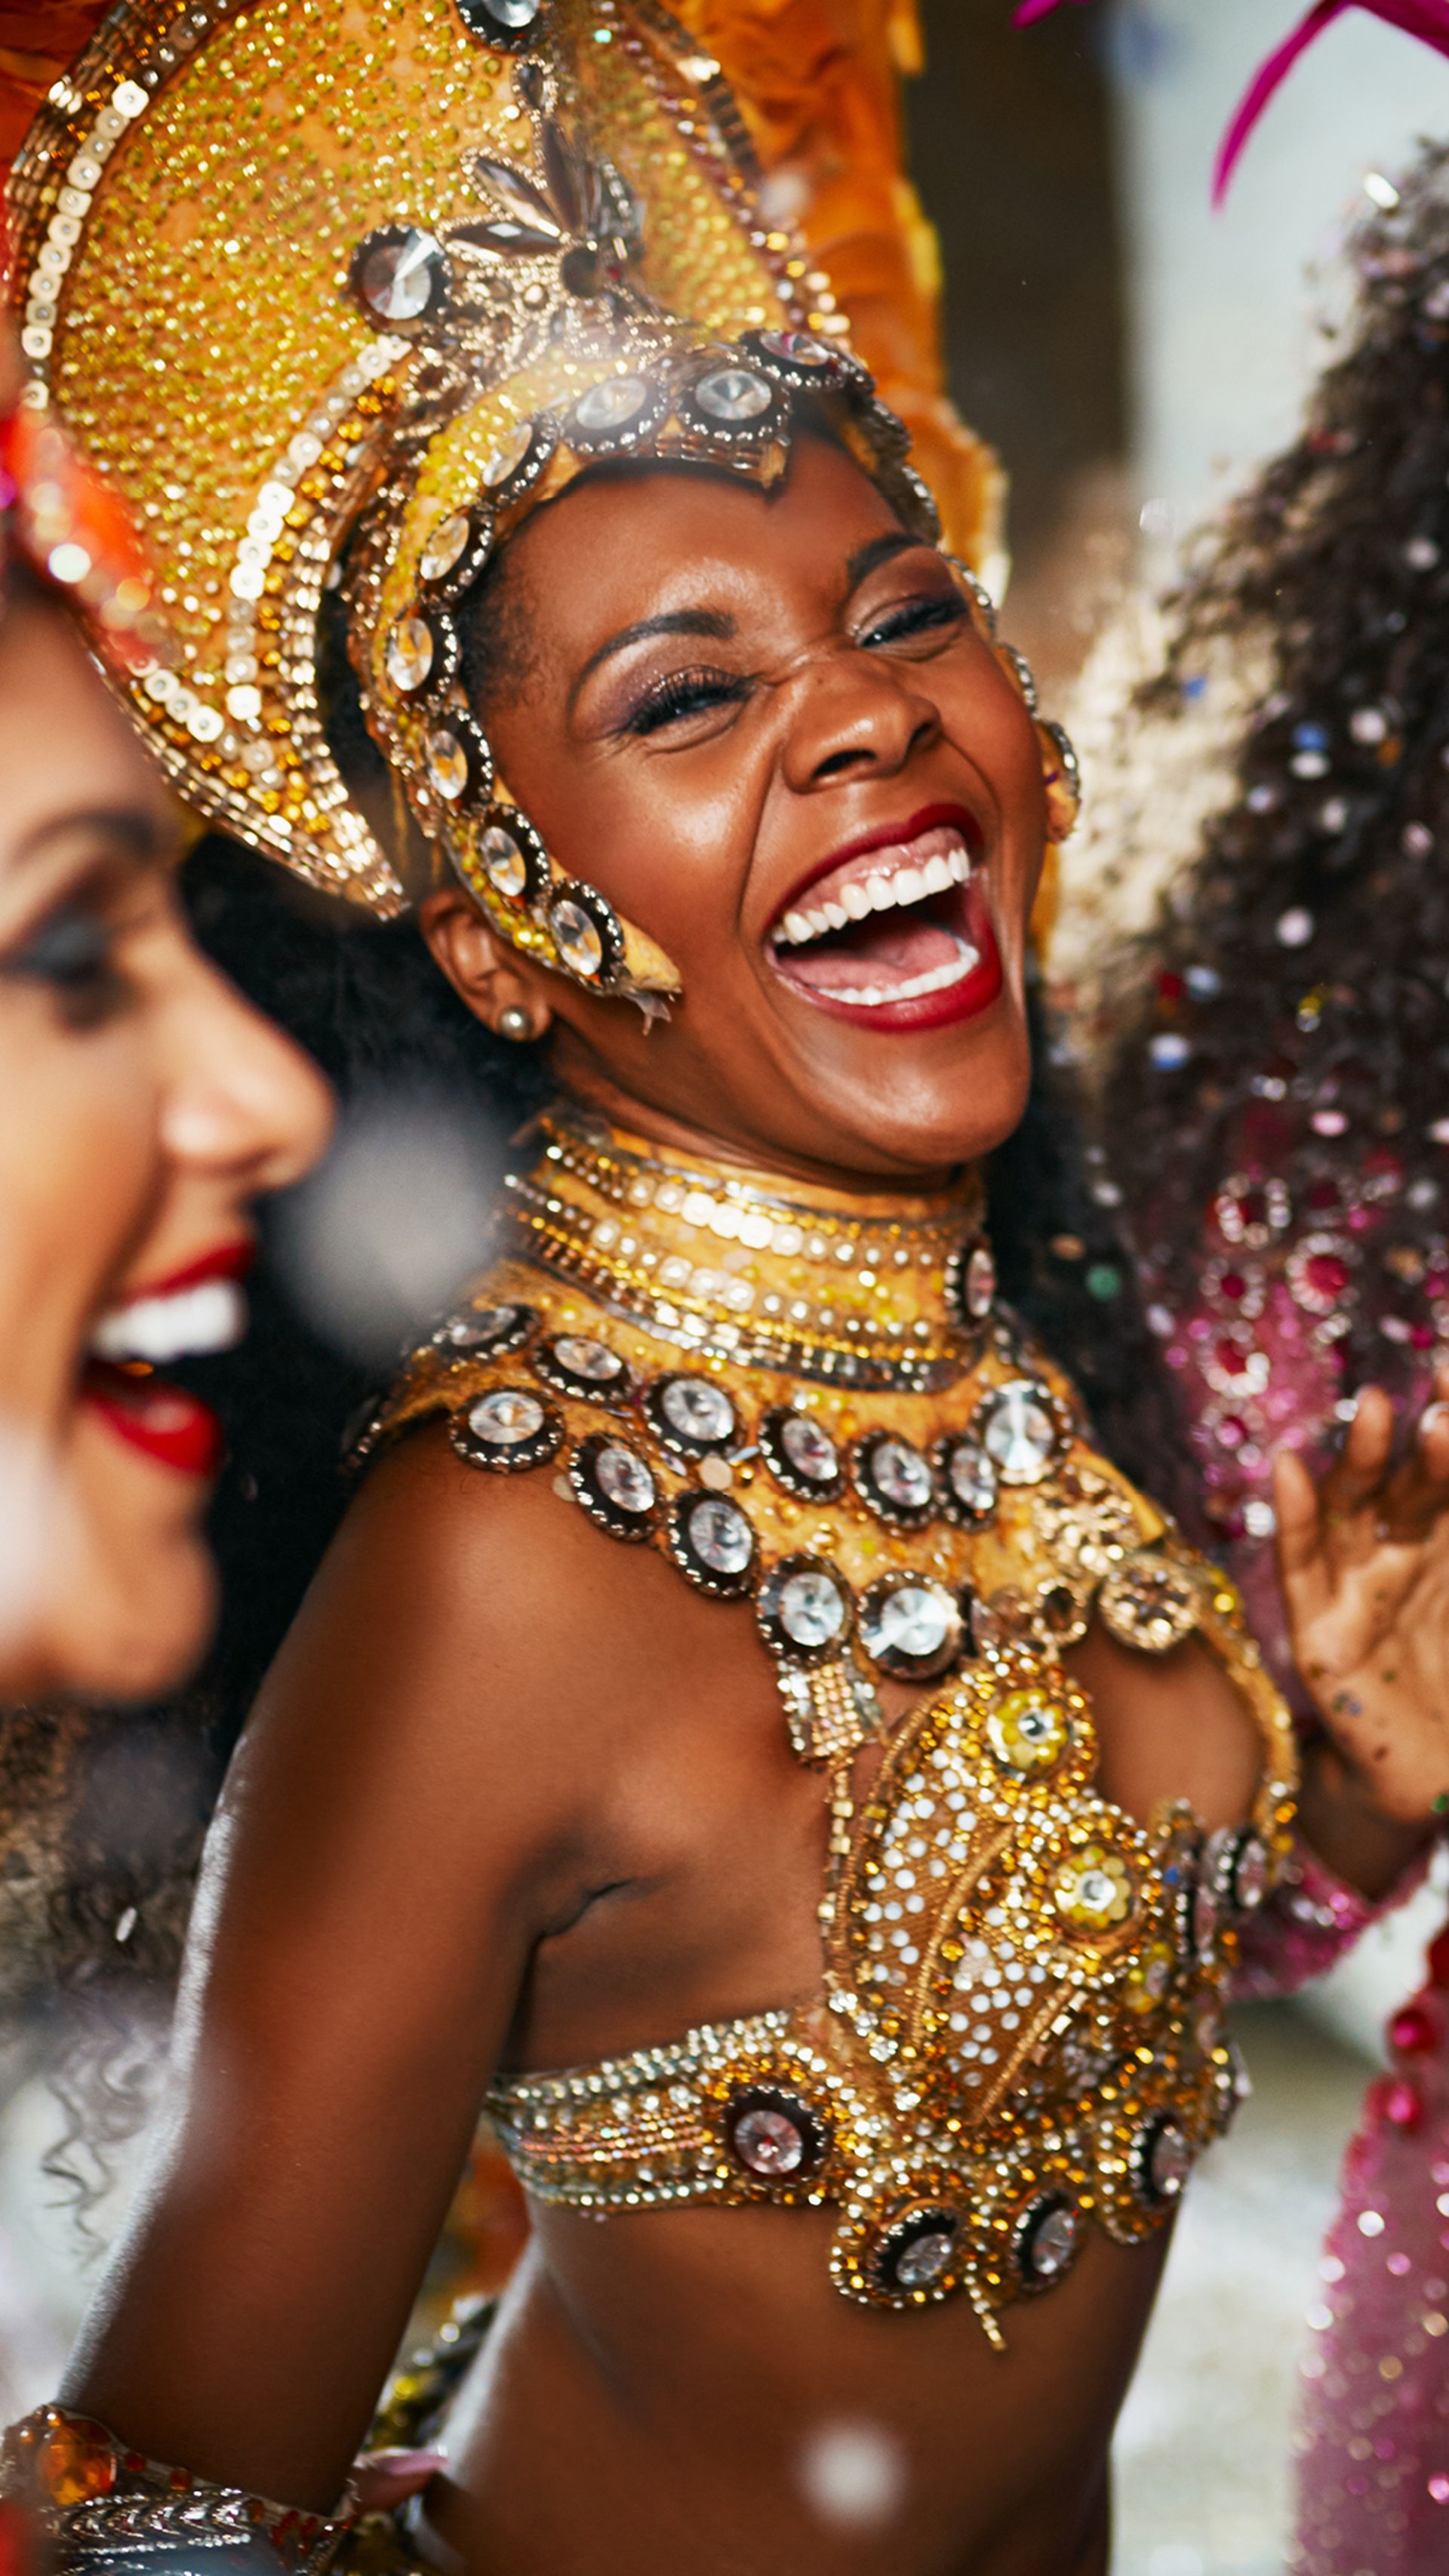 Caribbean danseressen in feestelijke outfit